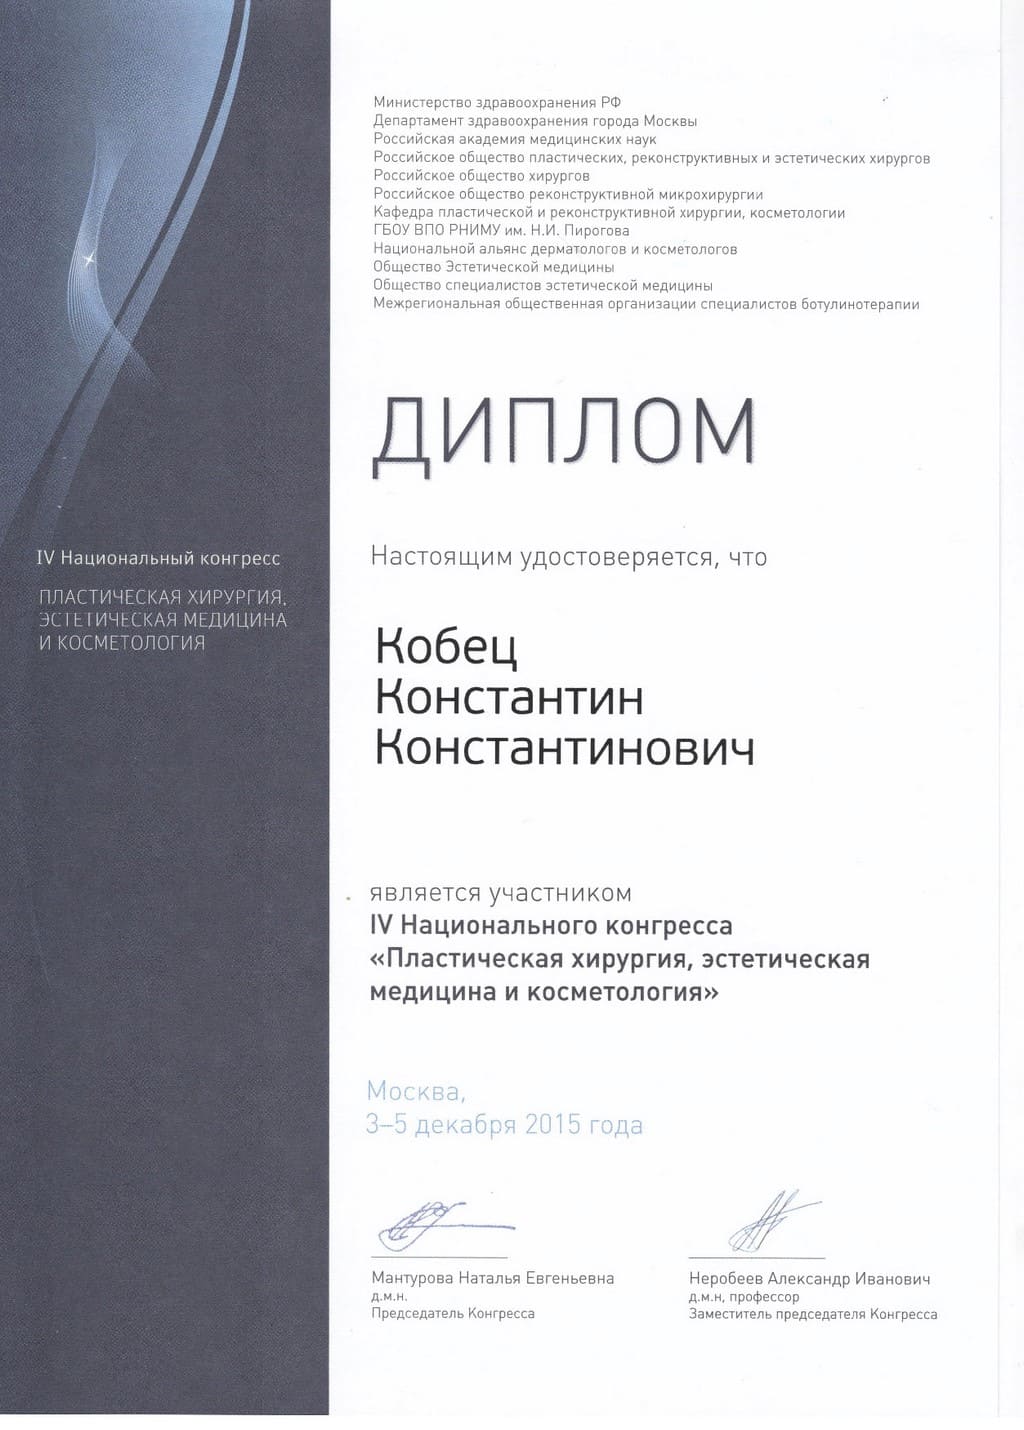 2015_12_3-5_Kobets_K_iv-nacionalnyi-kongress - plasticheskaya-hirurgiya - ehsteticheskaya-medicina-i-kosmetologiya.jpg